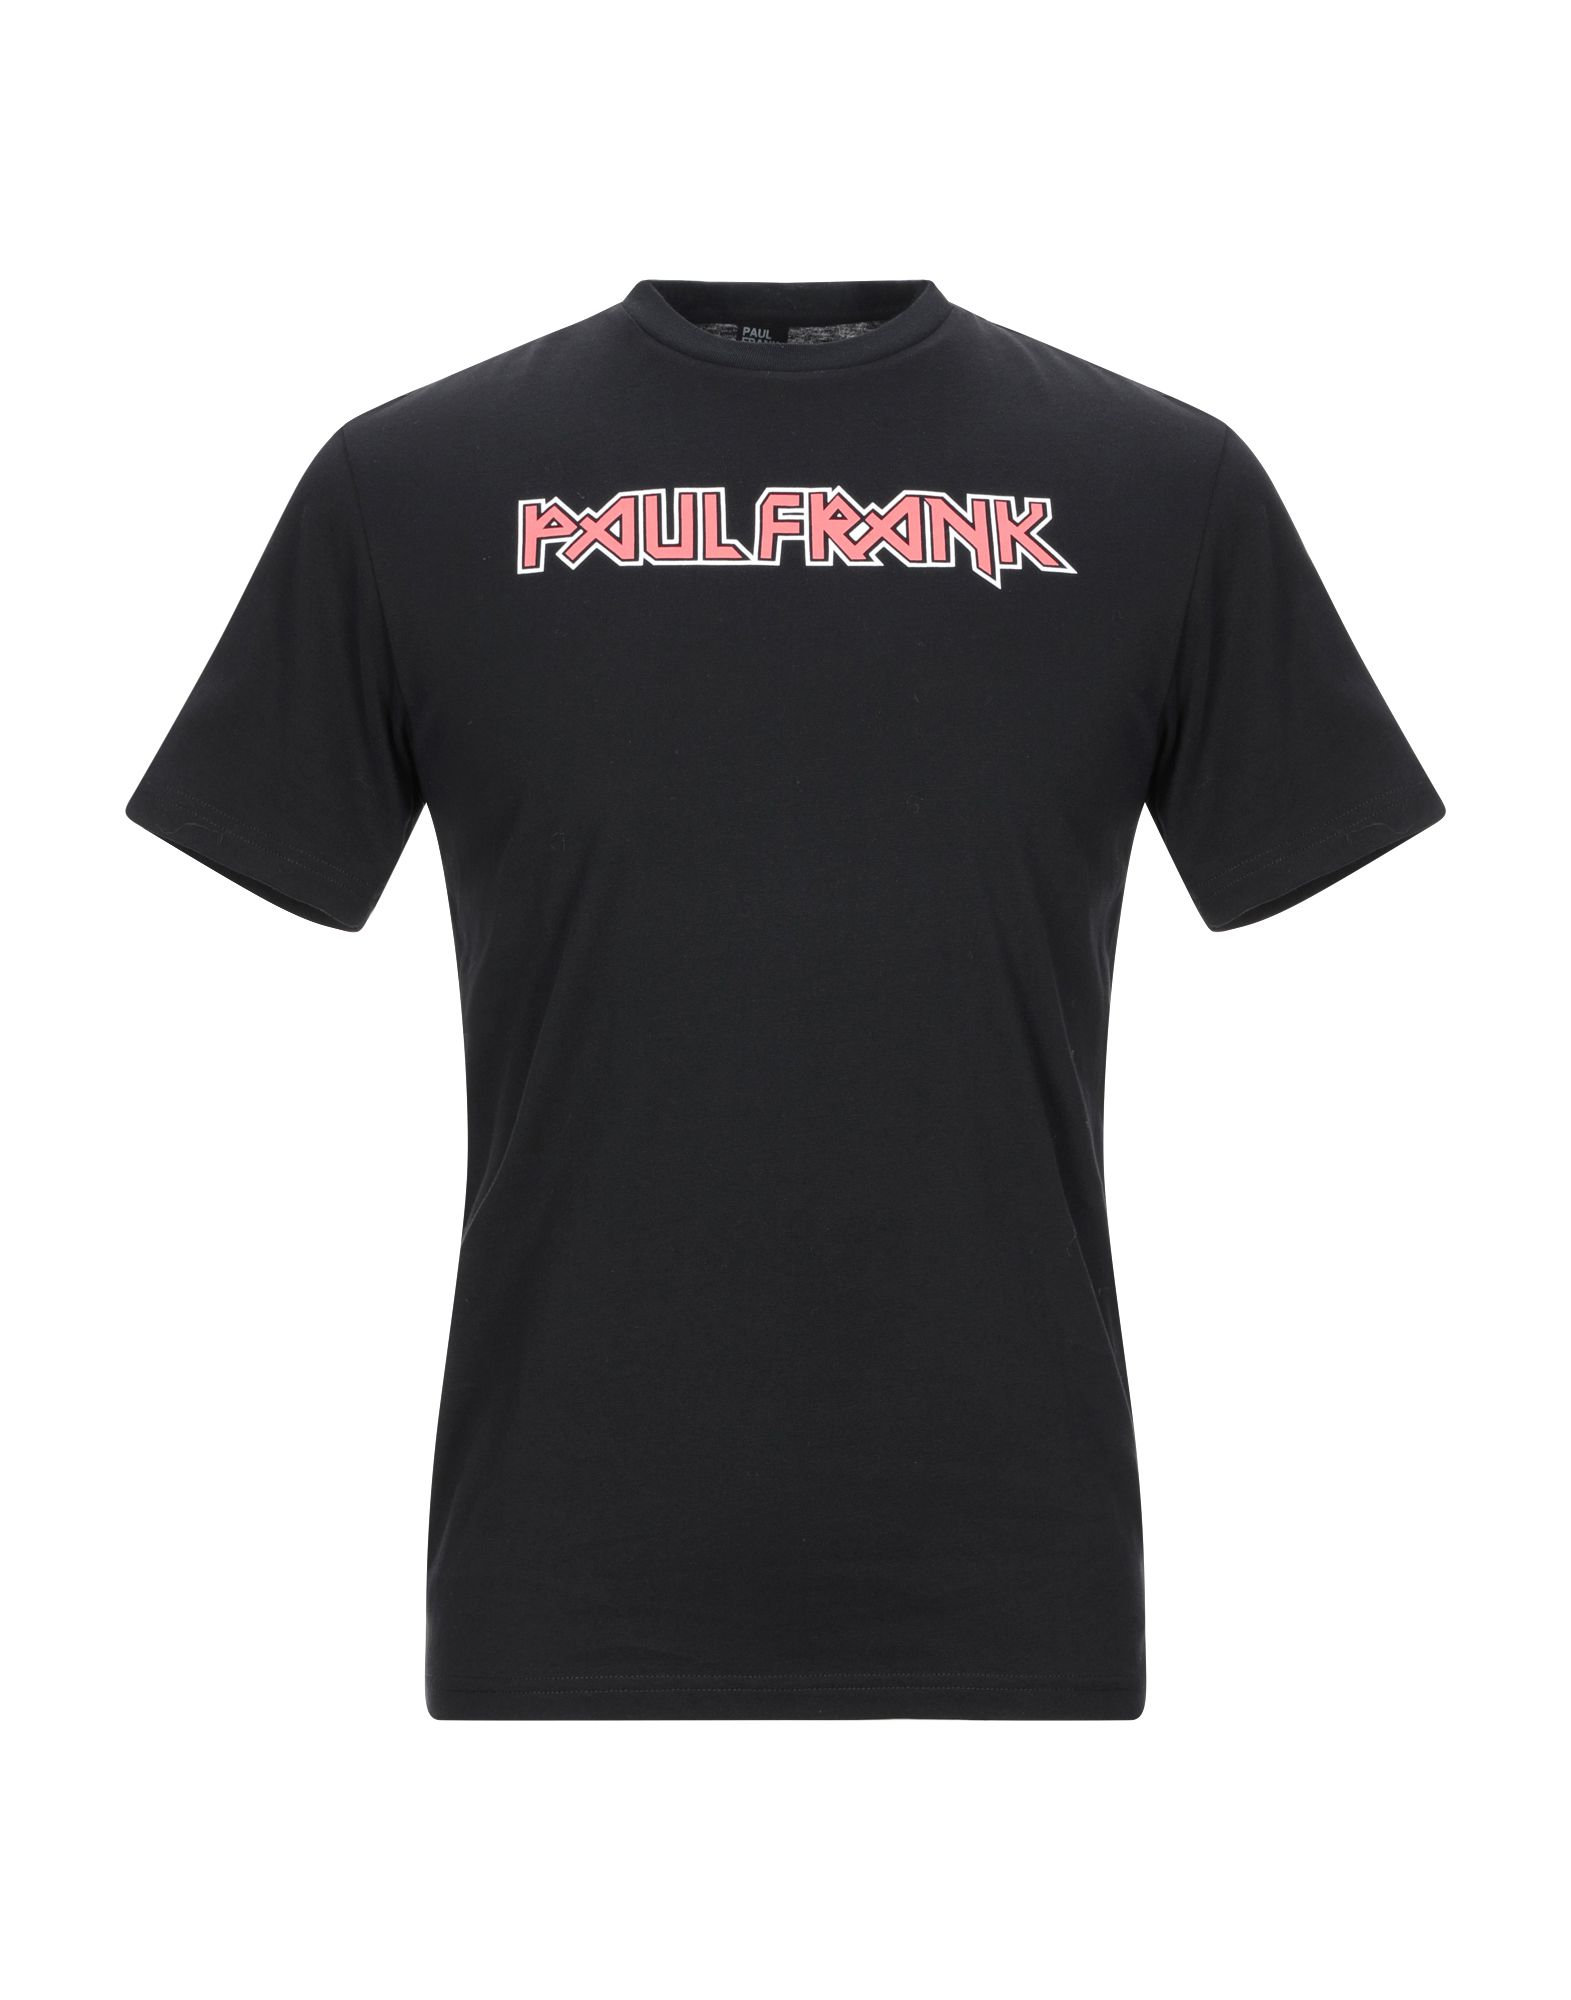 《送料無料》PAUL FRANK メンズ 半袖T シャツ ブラック S コットン 100%